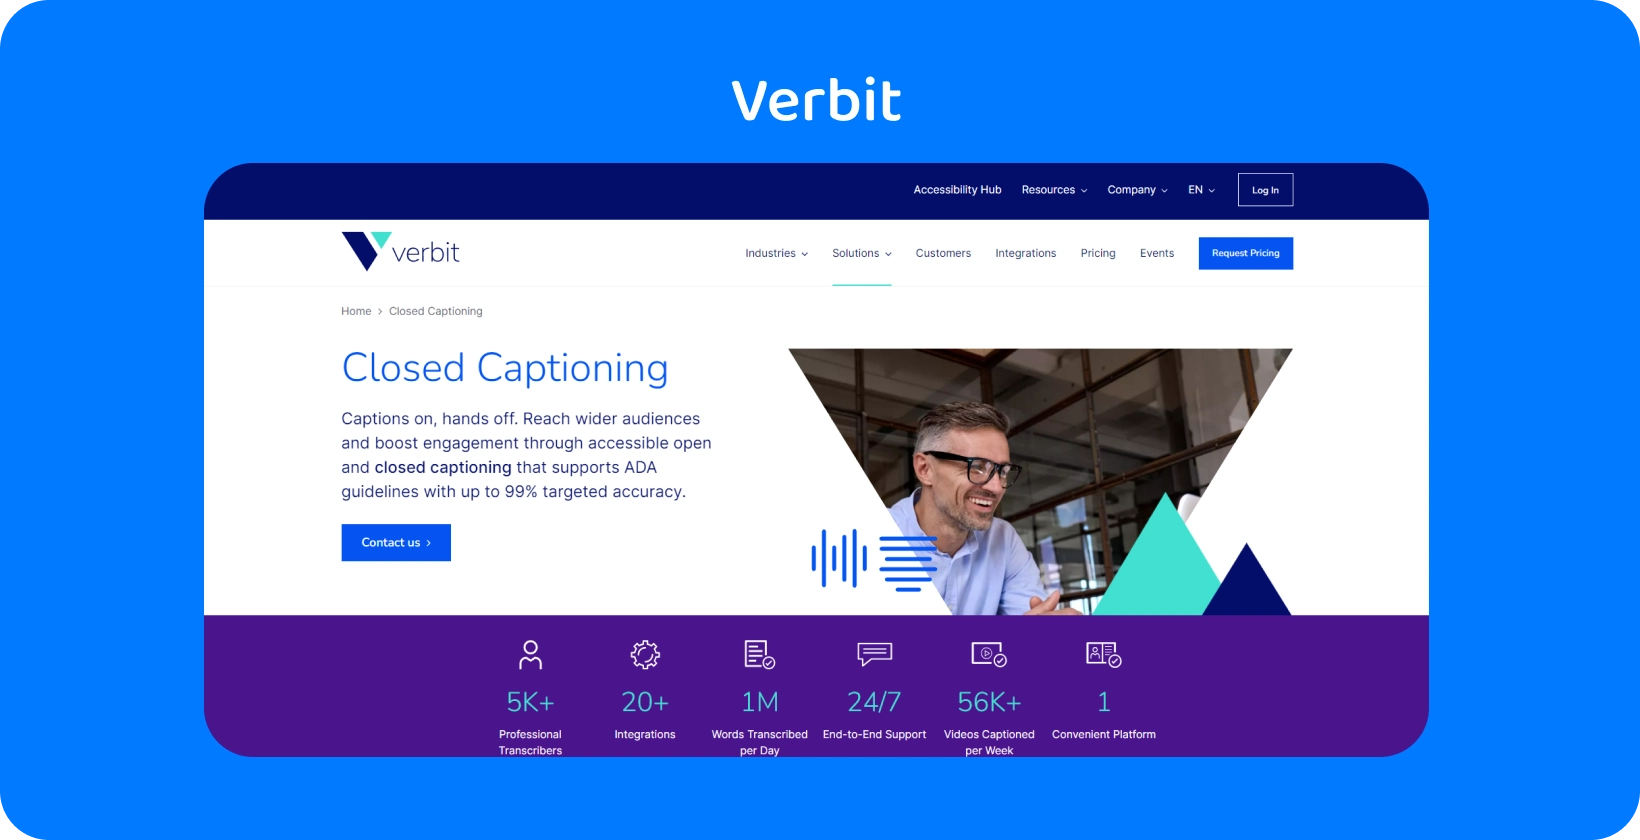 Verbit का कैप्शनिंग और ट्रांसक्रिप्शन सेवा पृष्ठ, समर्पित समर्थन और स्वयं-सेवा विकल्प प्रदान करता है।